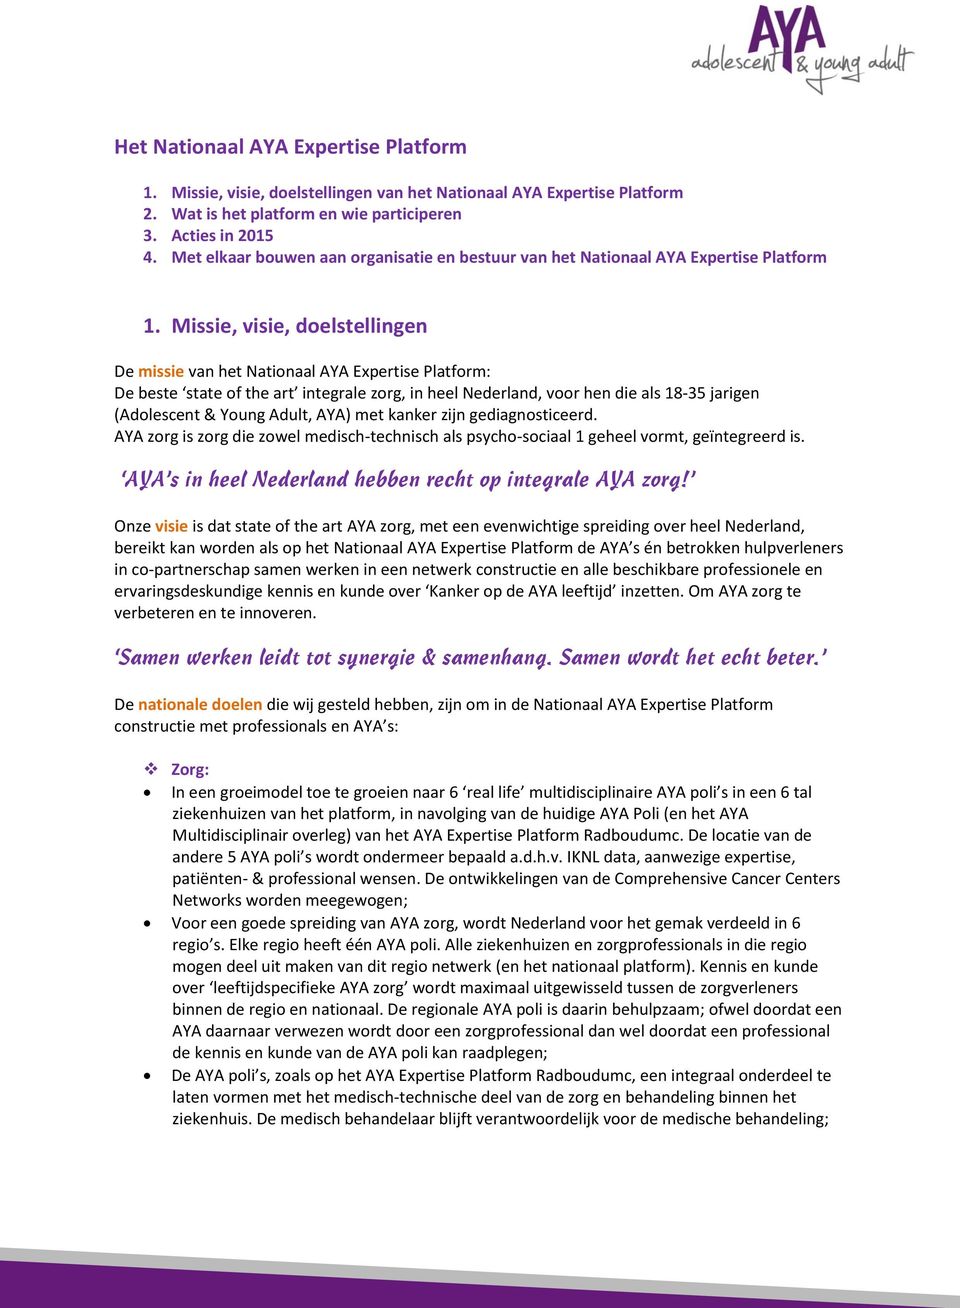 Missie, visie, doelstellingen De missie van het Nationaal AYA Expertise Platform: De beste state of the art integrale zorg, in heel Nederland, voor hen die als 18-35 jarigen (Adolescent & Young